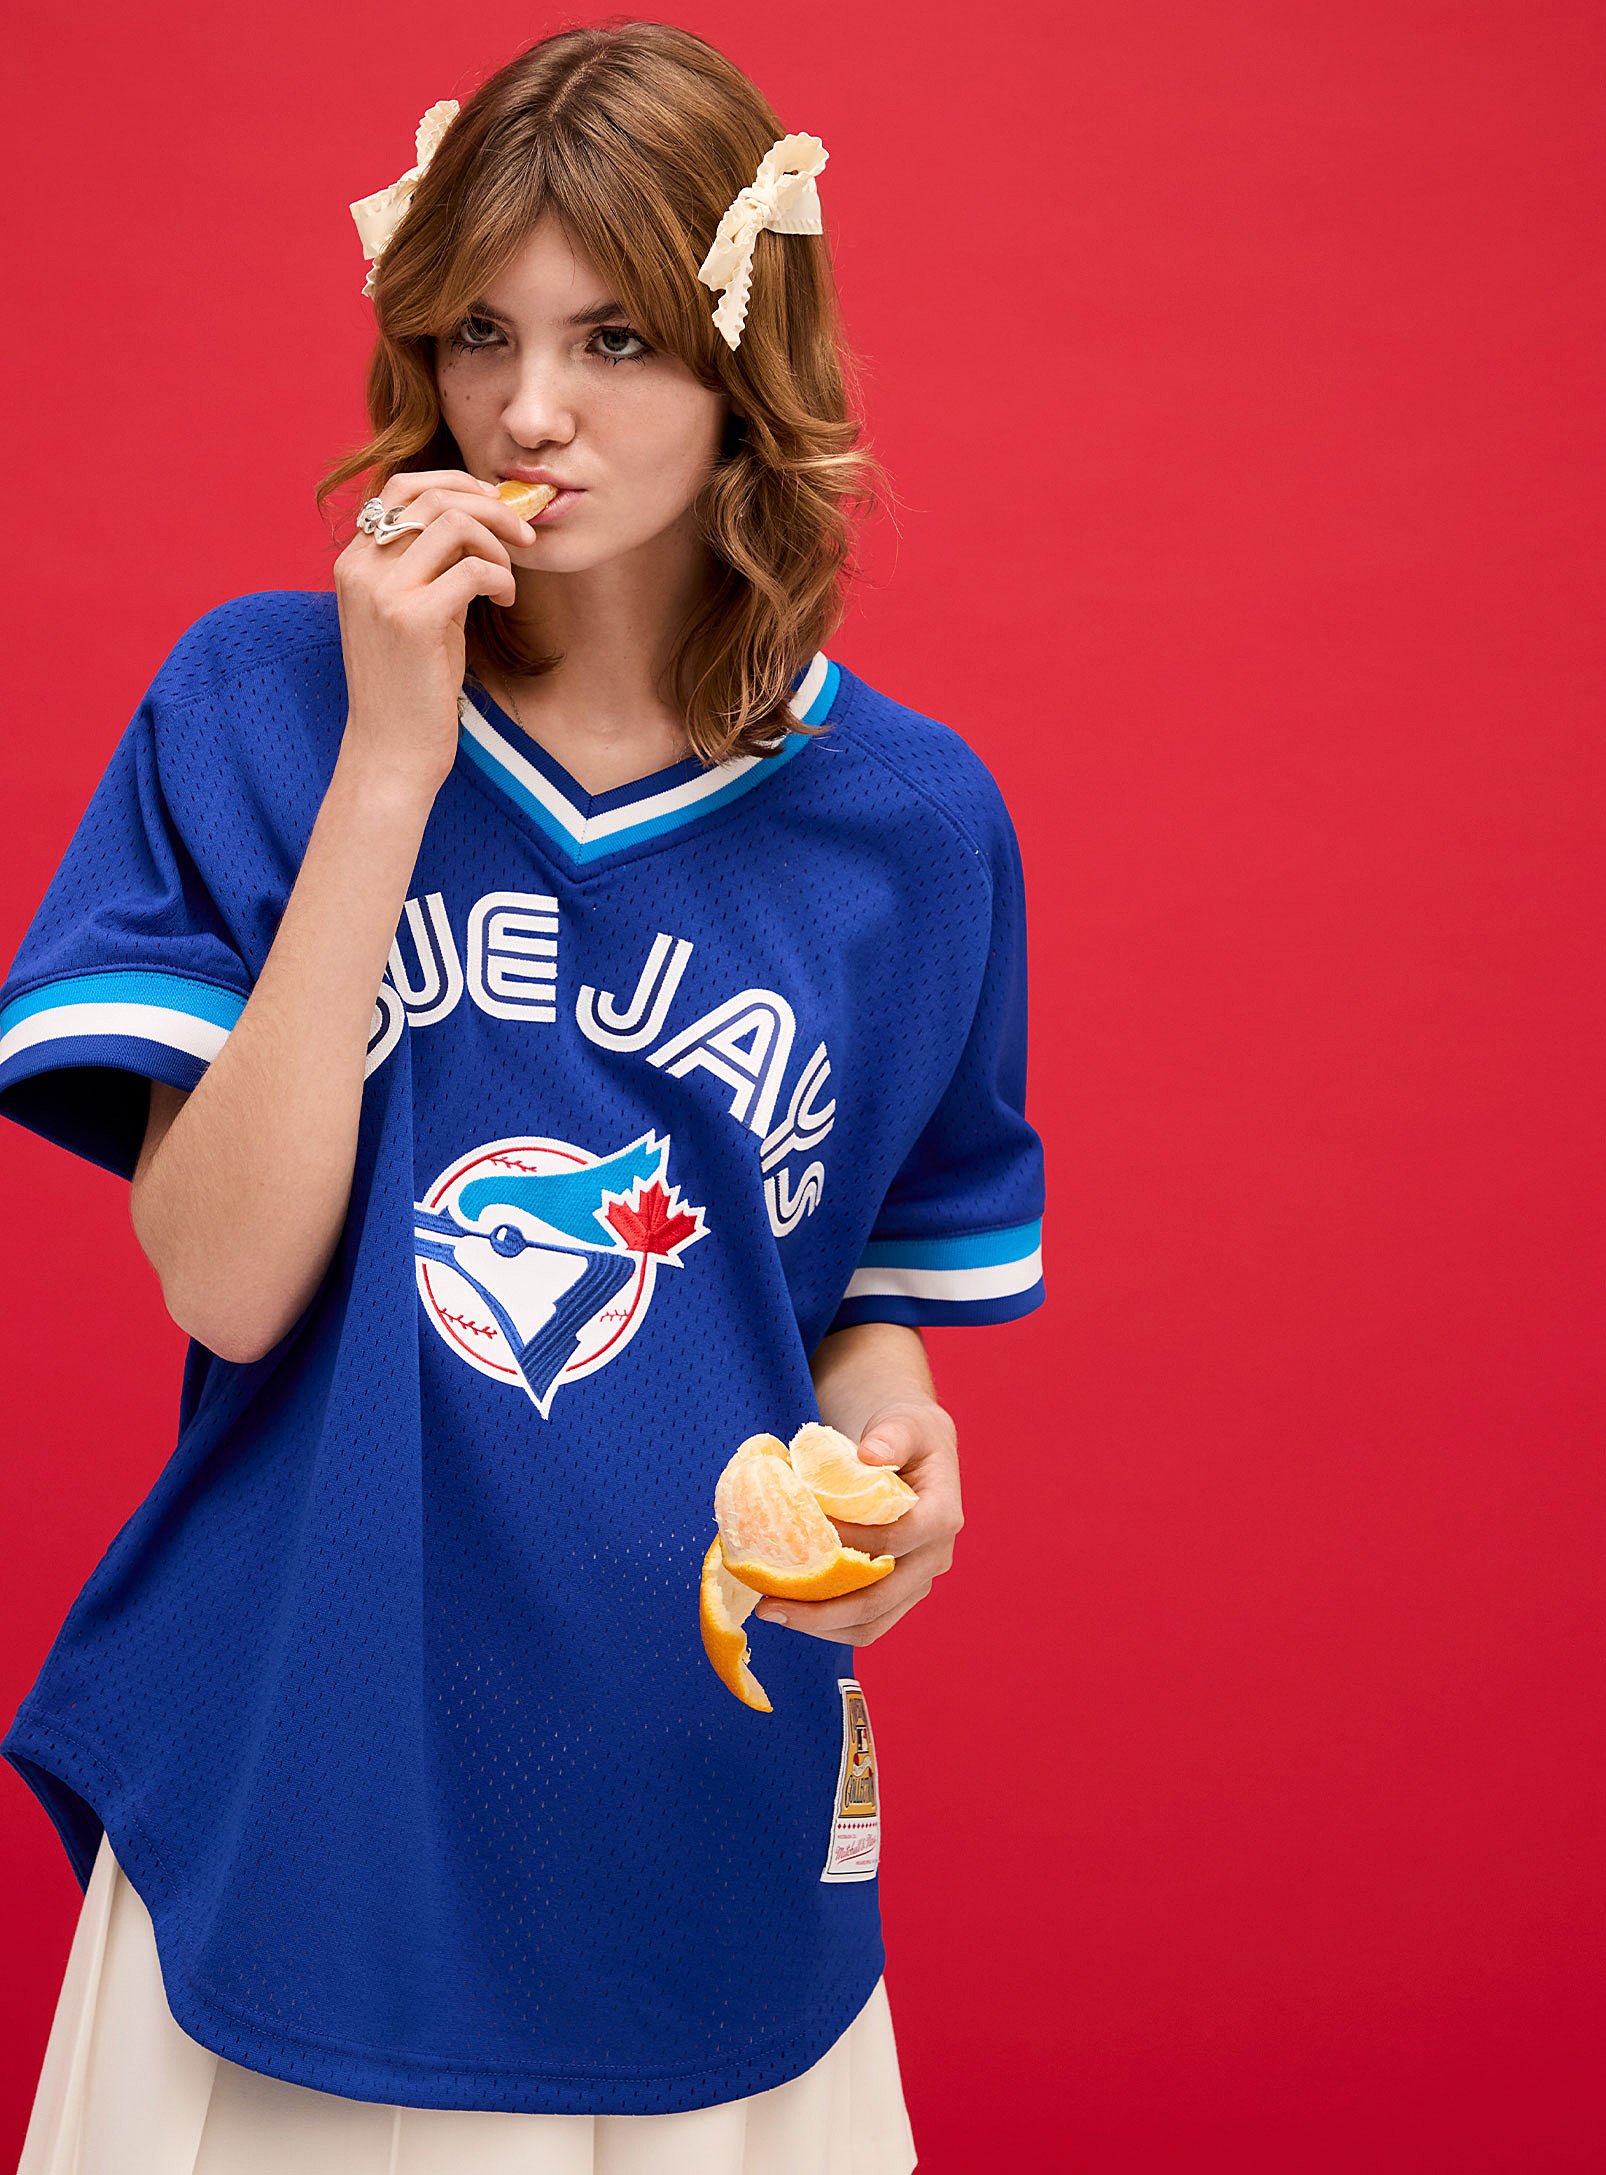 Mitchell & Ness - Women's Blue Jays baseball jersey